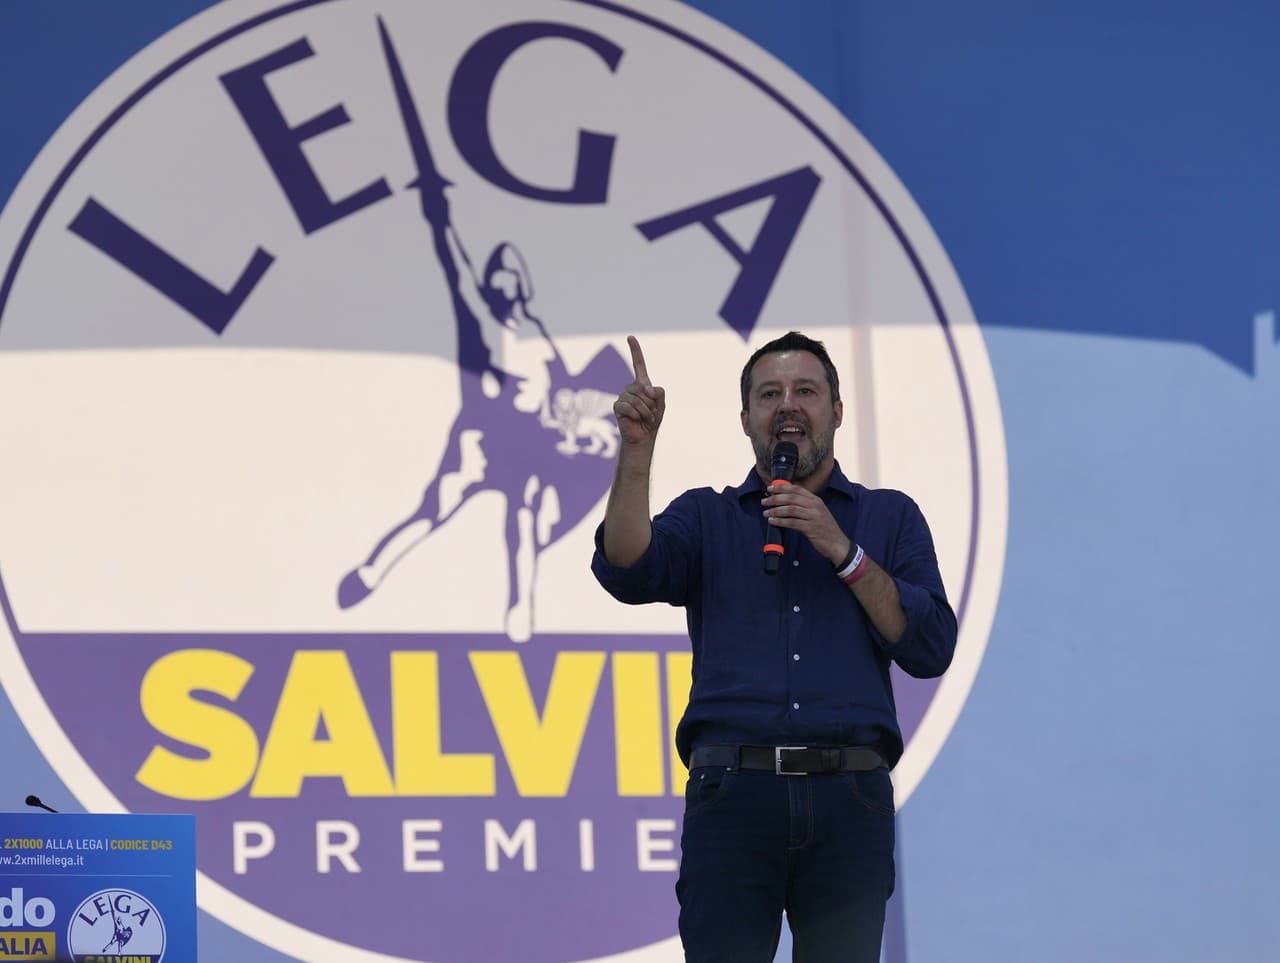 Matteo Salvini je hlavnou postavou predčasných volieb v Taliansku.